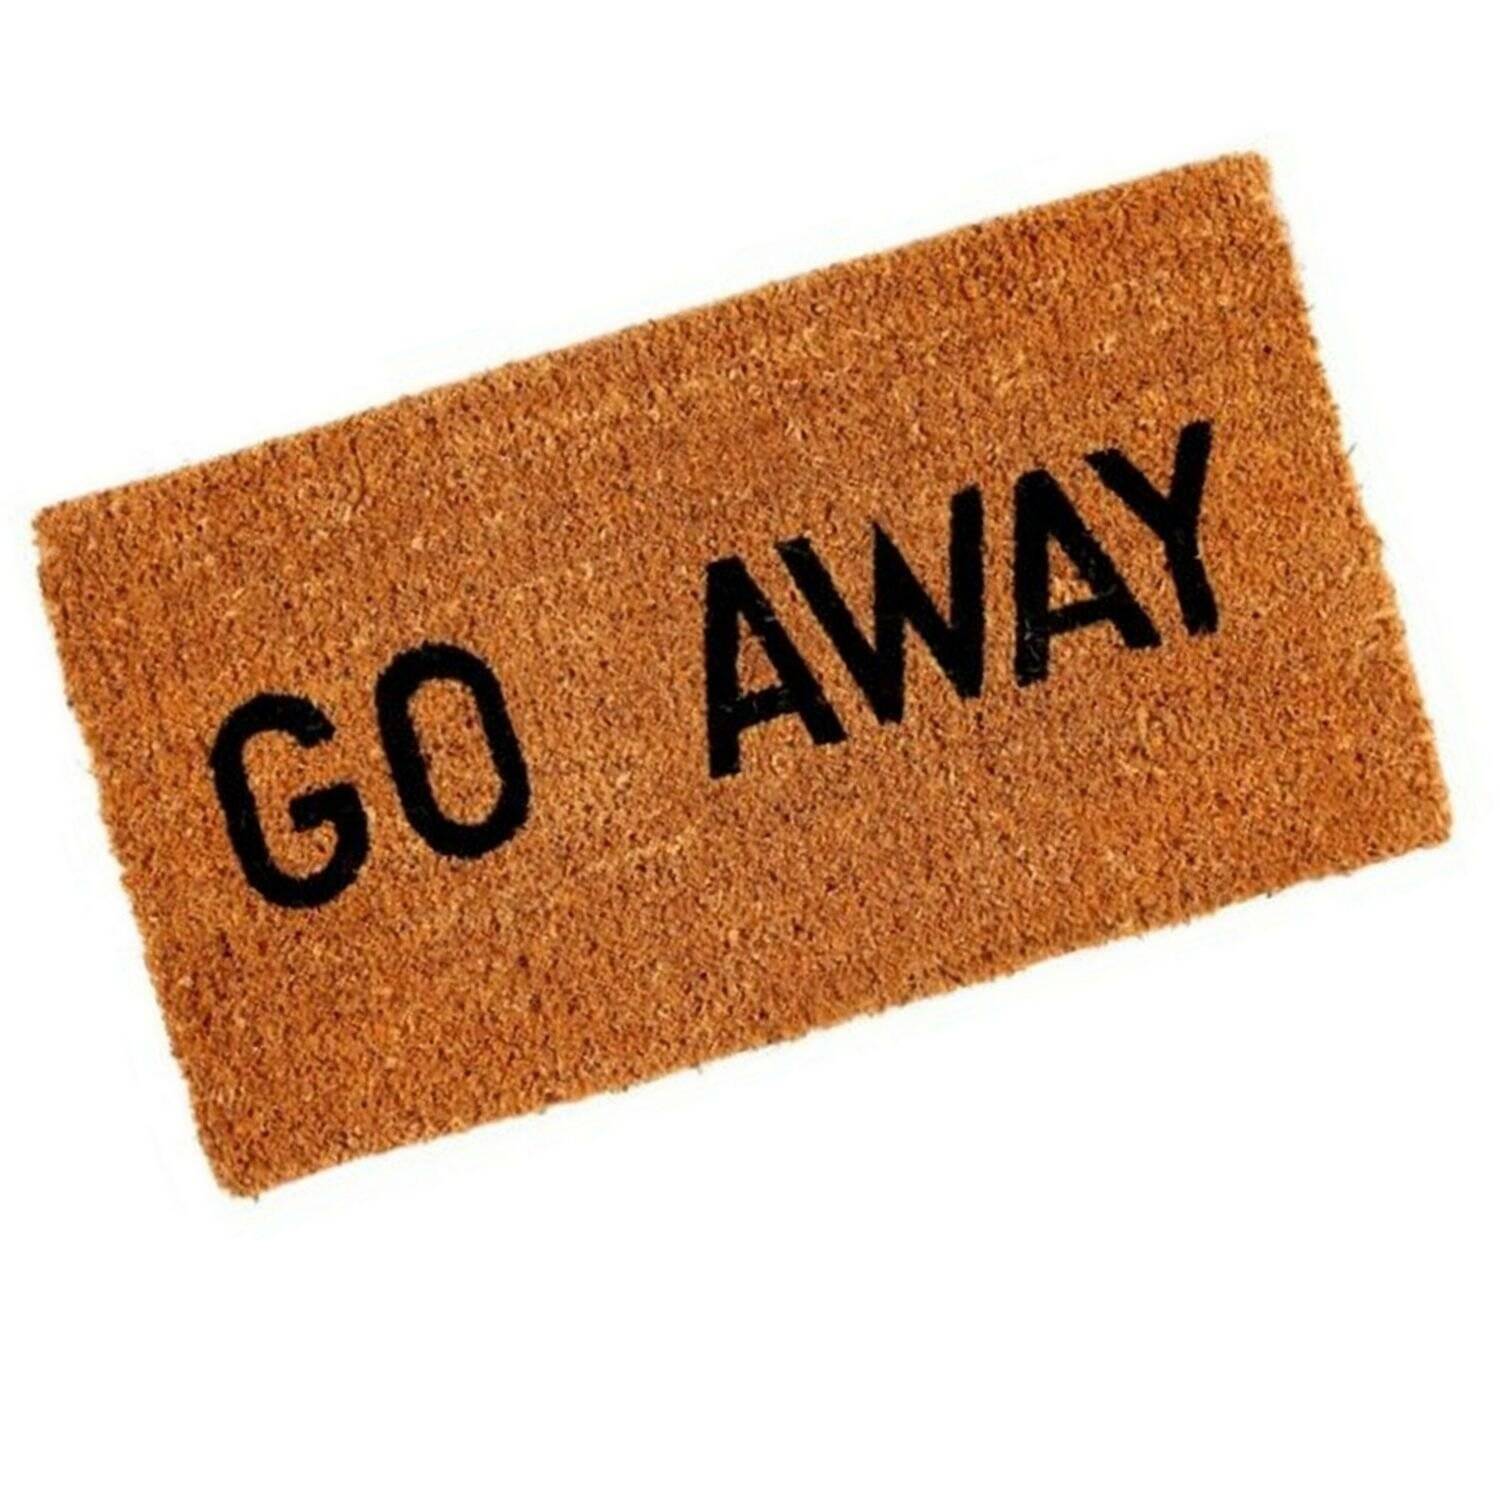 Go Away Doormat - //coolthings.us